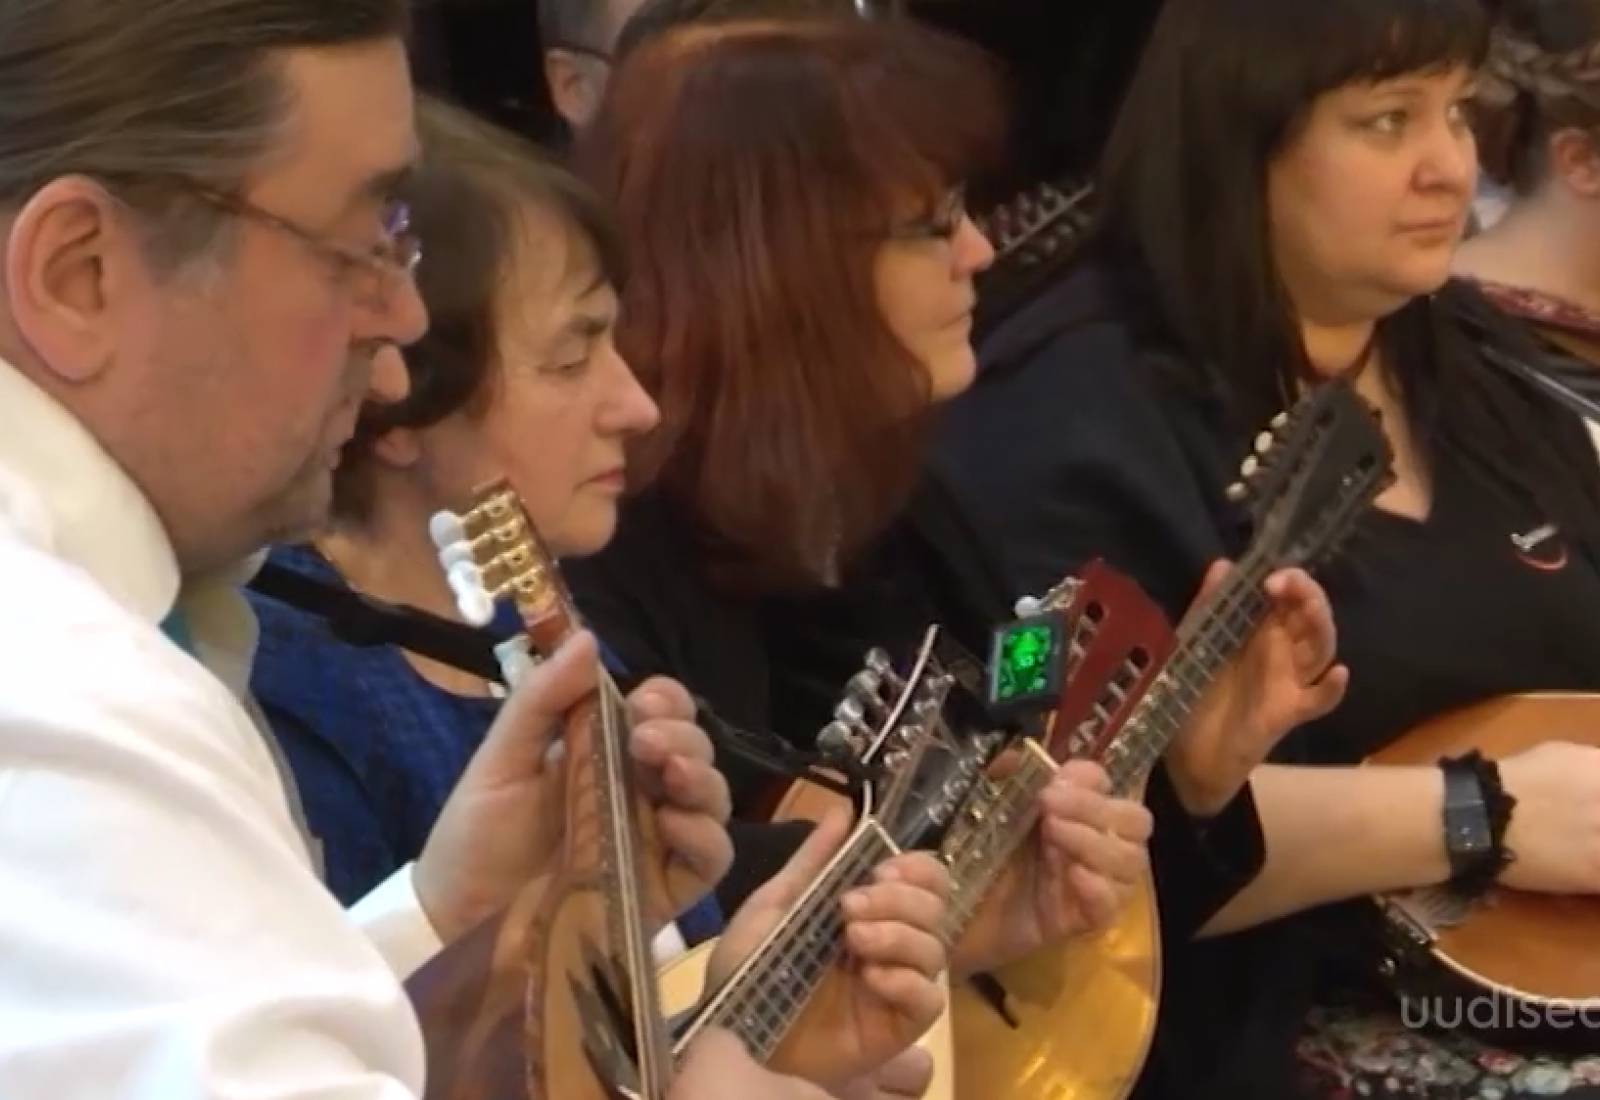 Video! Vaata, kuidas harjutavad sada mandoliinimängijat peagi startivaks kontserttuuriks